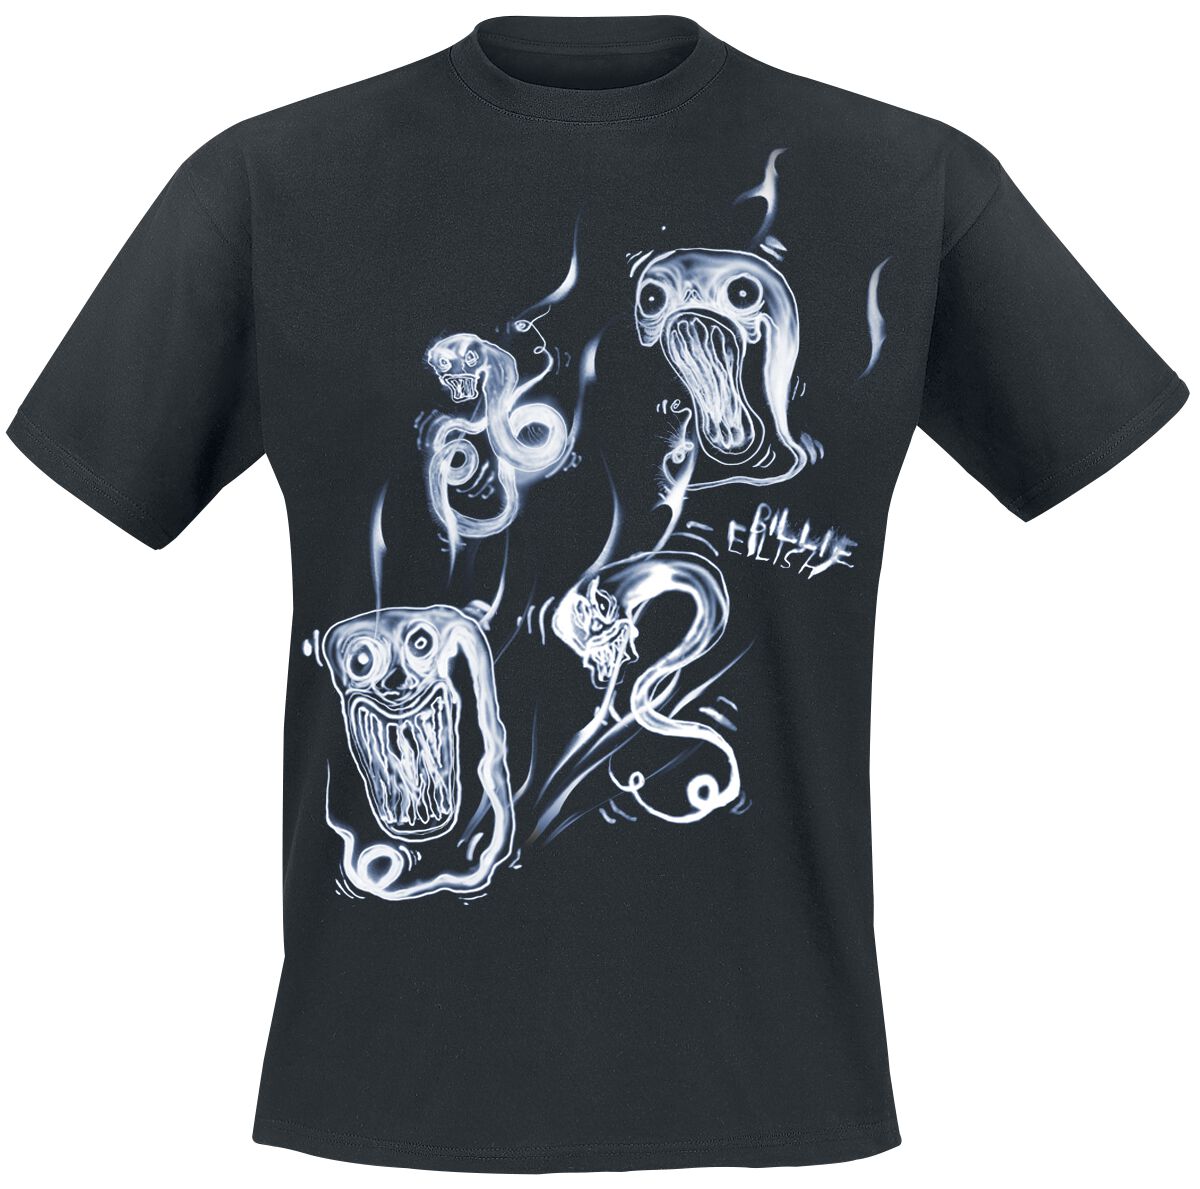 Billie Eilish T-Shirt - Ghoul Smoke - S bis XXL - für Männer - Größe S - schwarz  - Lizenziertes Merchandise!